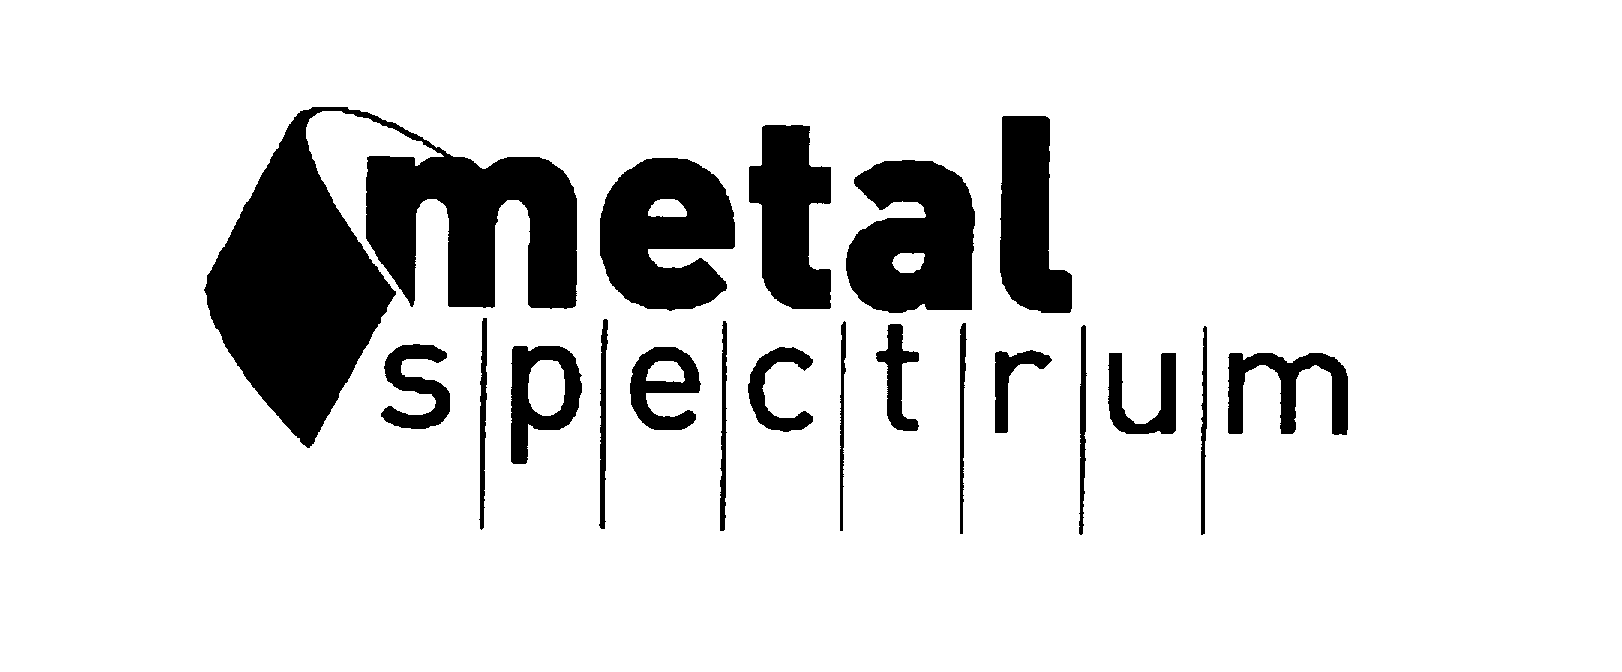  METAL SPECTRUM